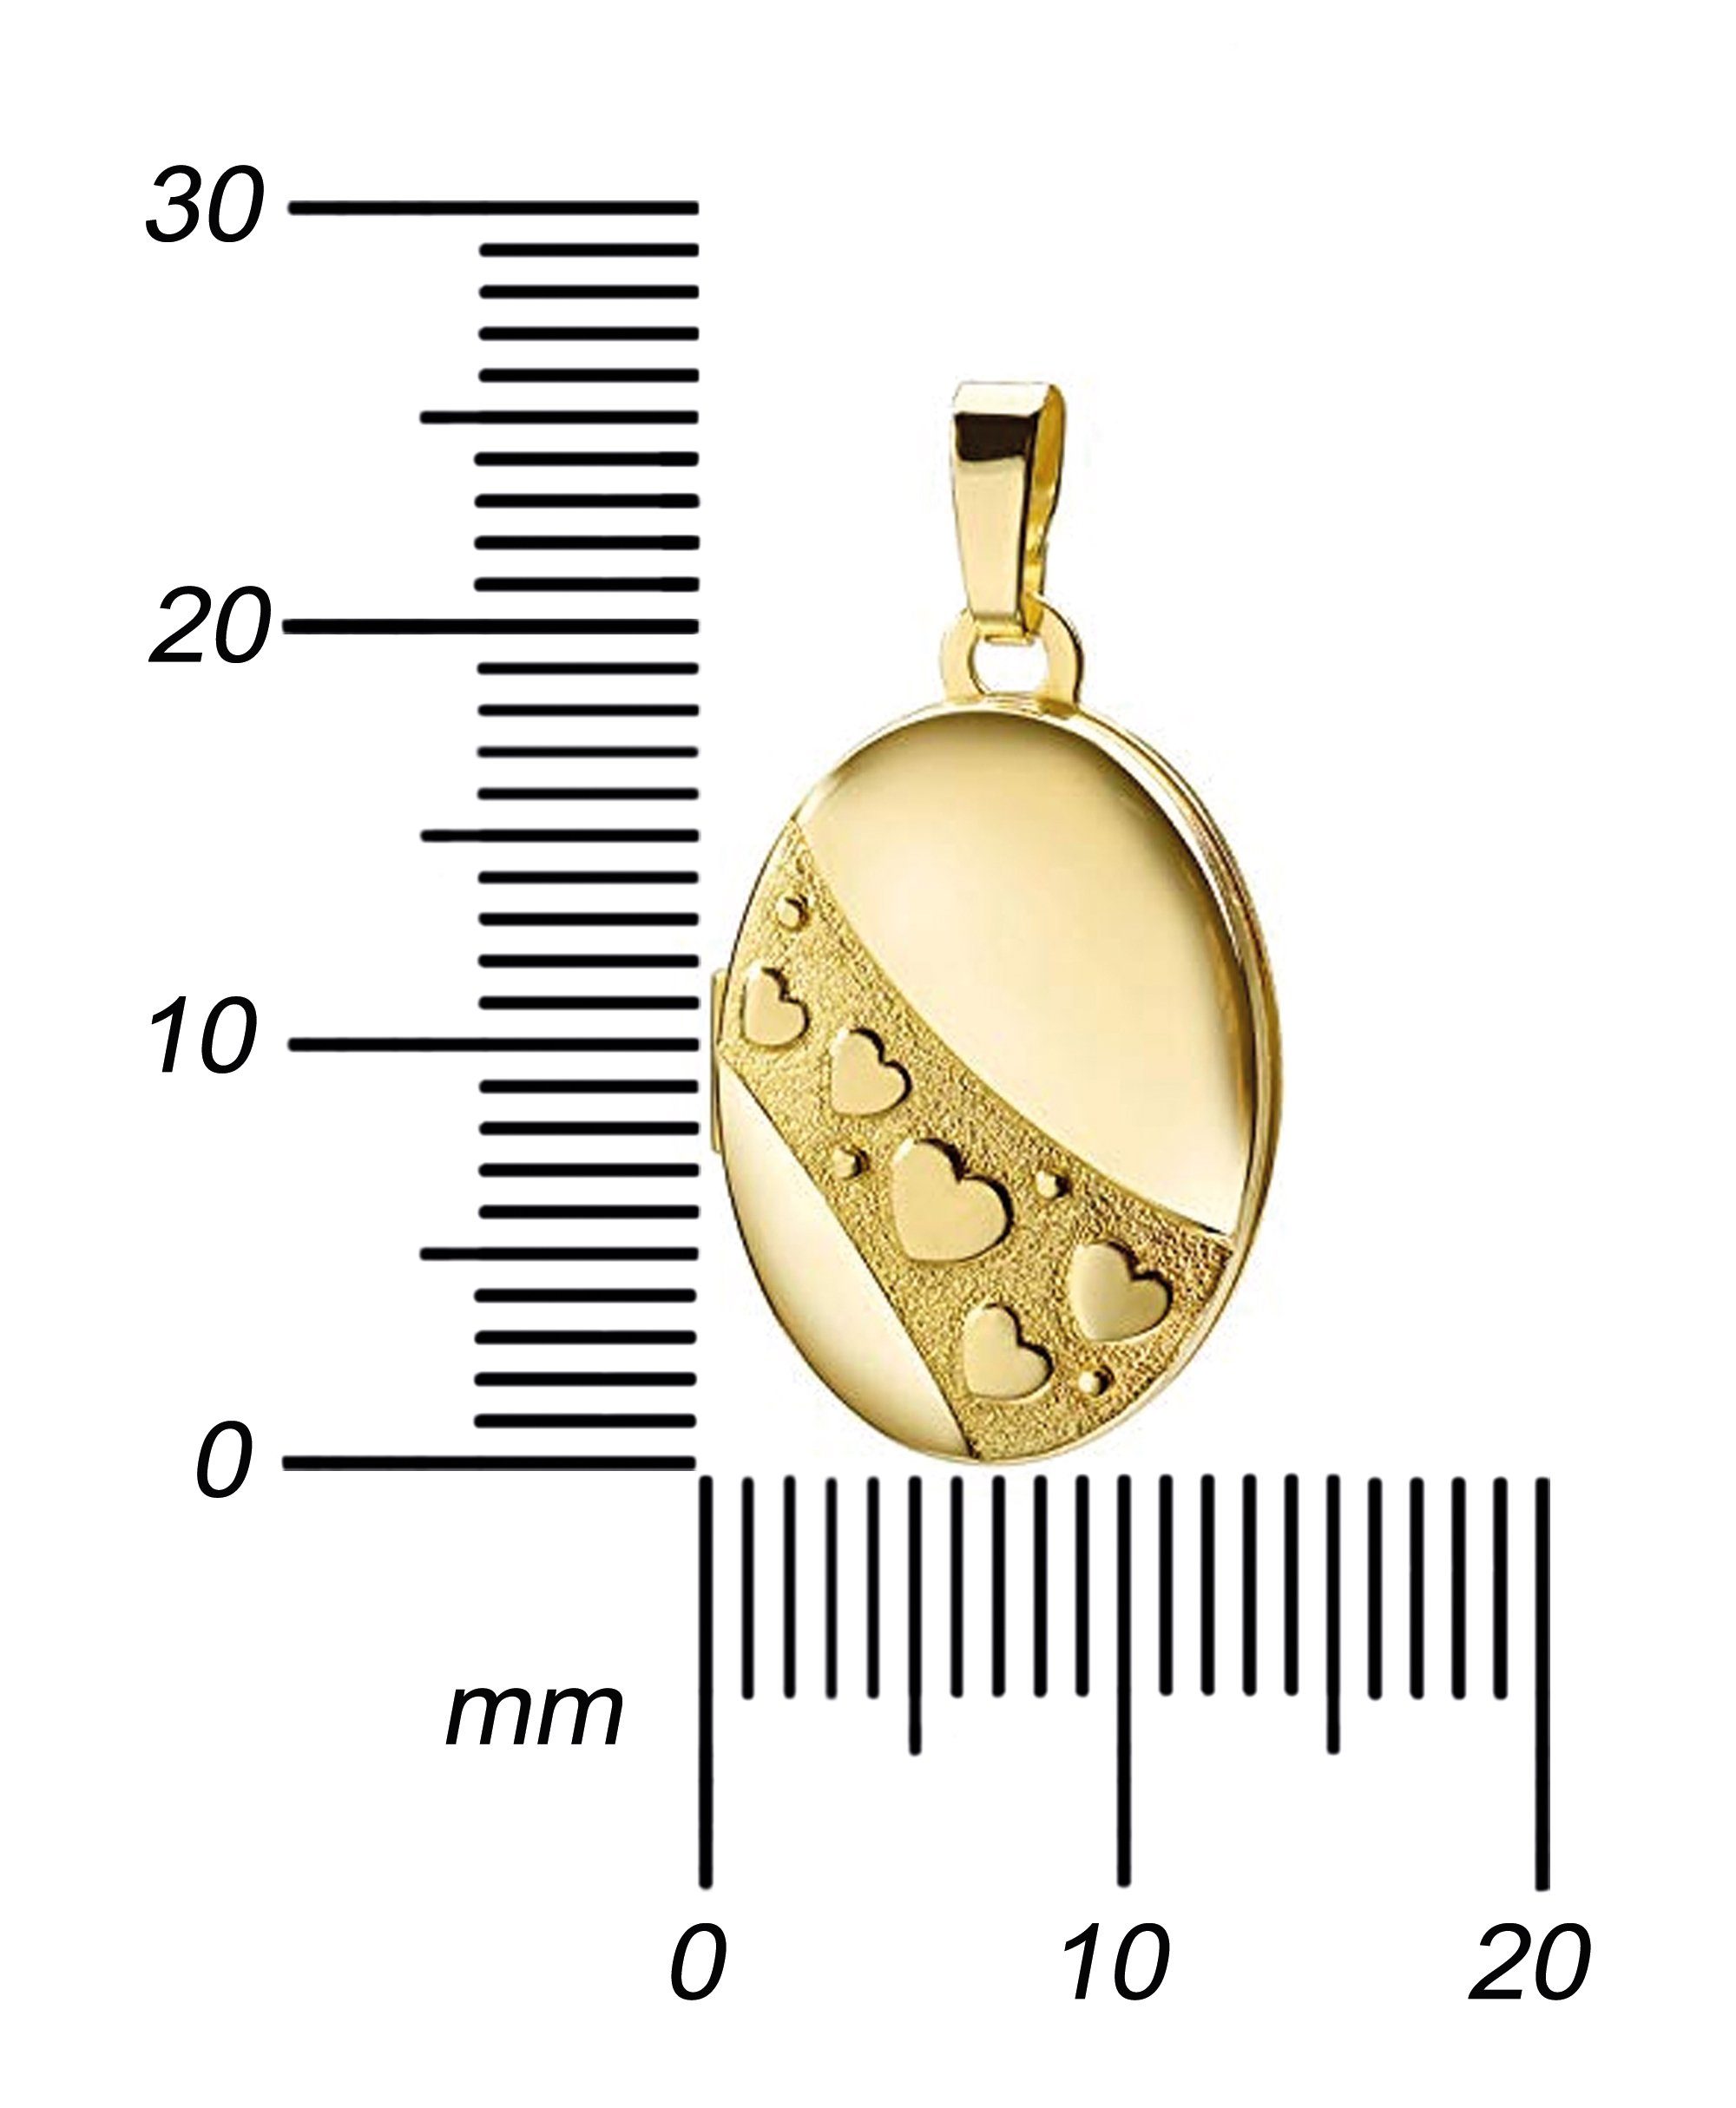 JEVELION Medallionanhänger Medaillon Gold 333 - Amulett, 2 zum 36 vergoldet für - mit Kette. (Bilder Öffnen Herzen Mädchen), cm Fotos oder Mit Anhänger 70 Länge Damen und für wählbar ohne Halskette